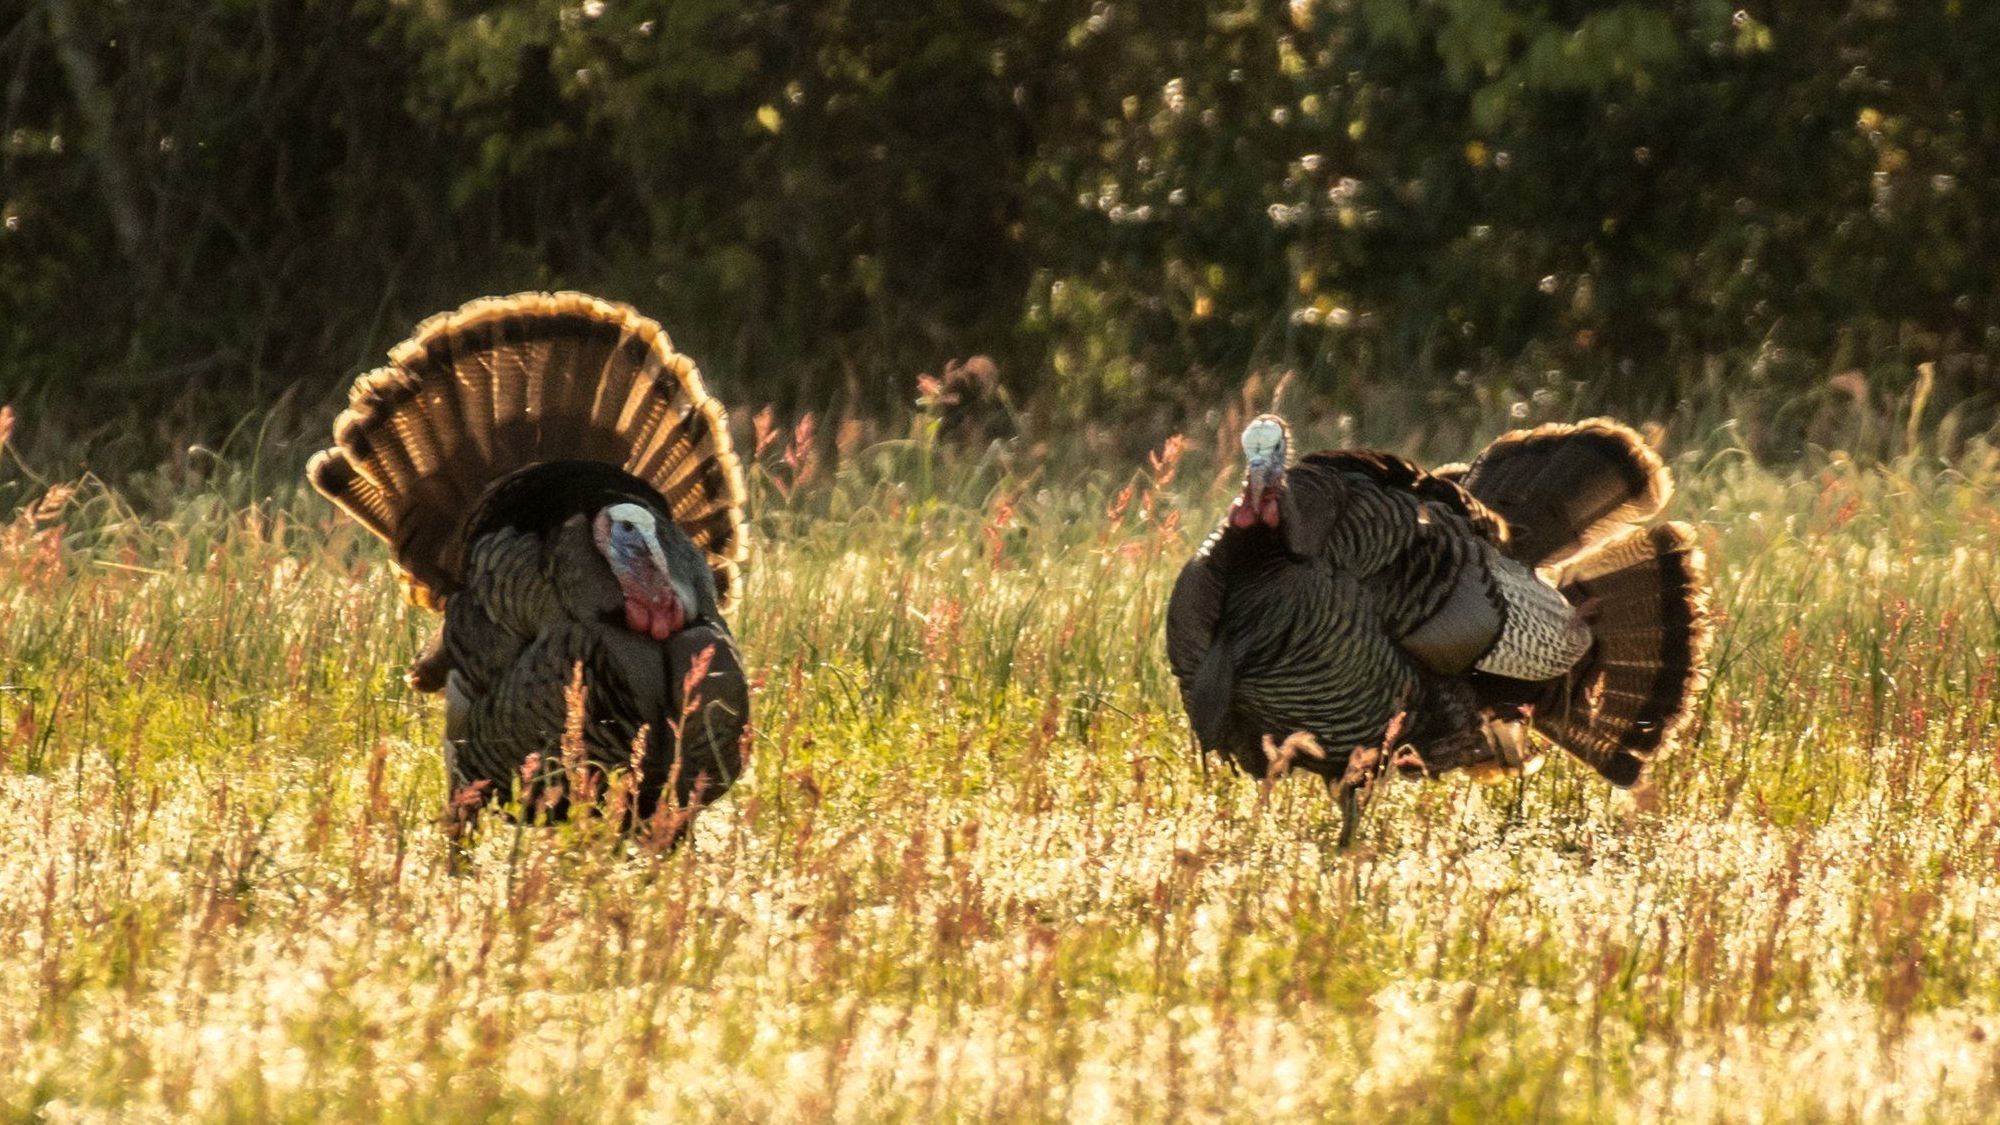 Turkeys strutting during turkey season. 